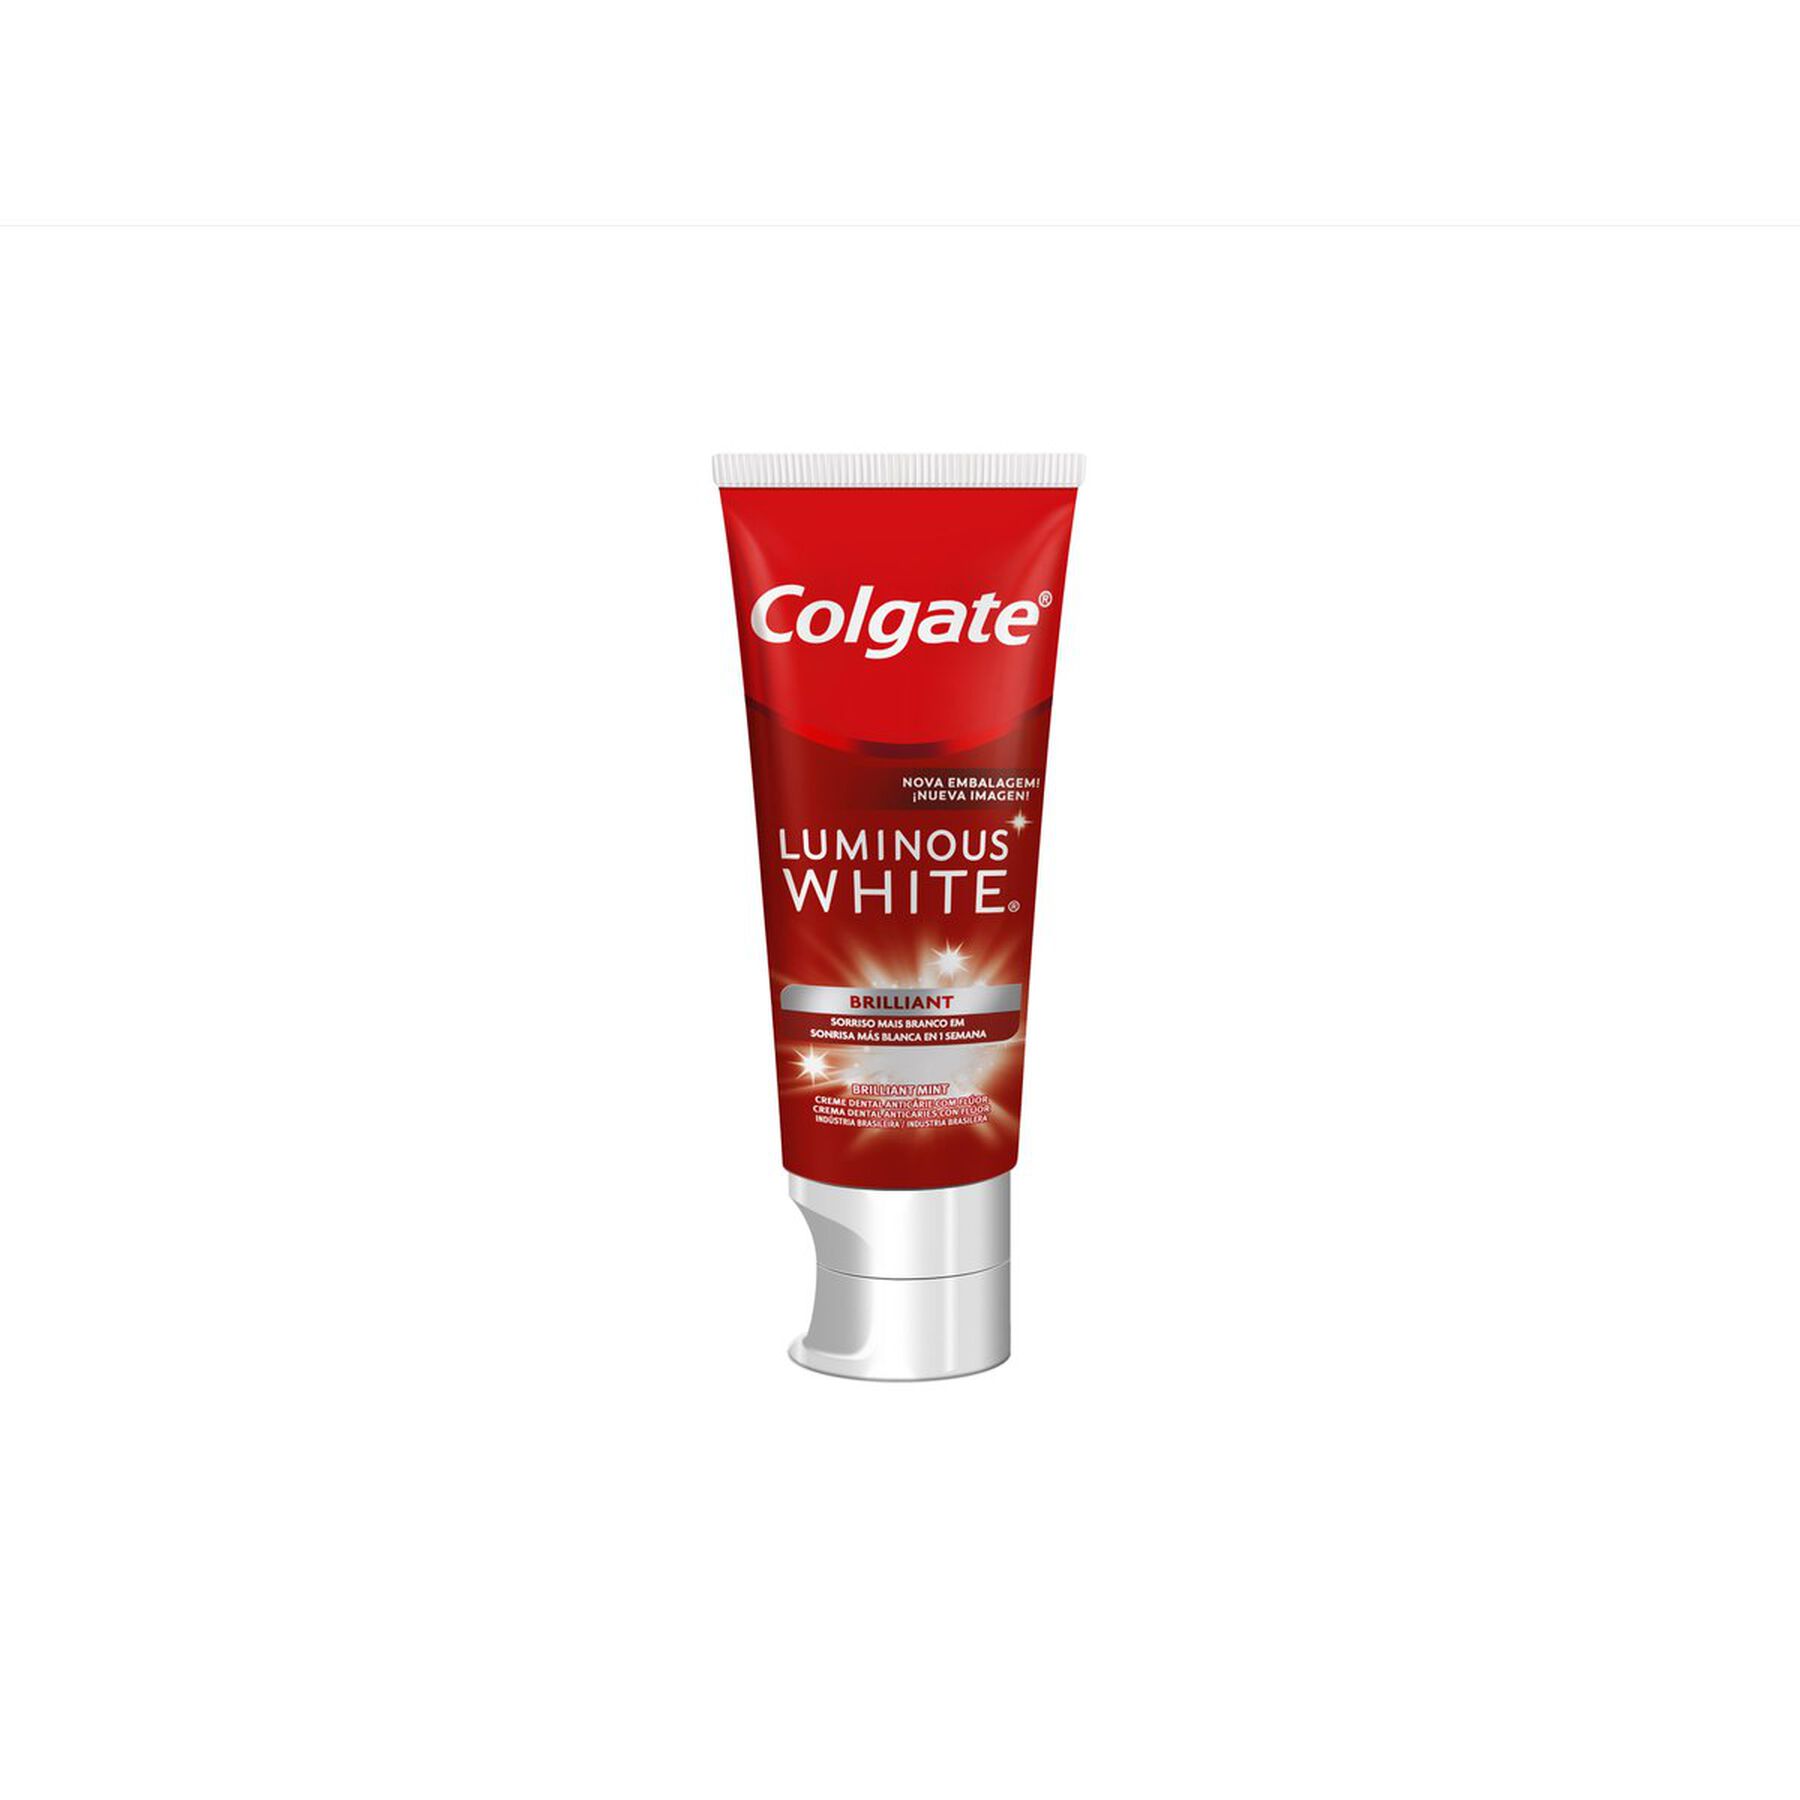 Creme Dental Clareador Colgate Luminous White Brilliant 70g